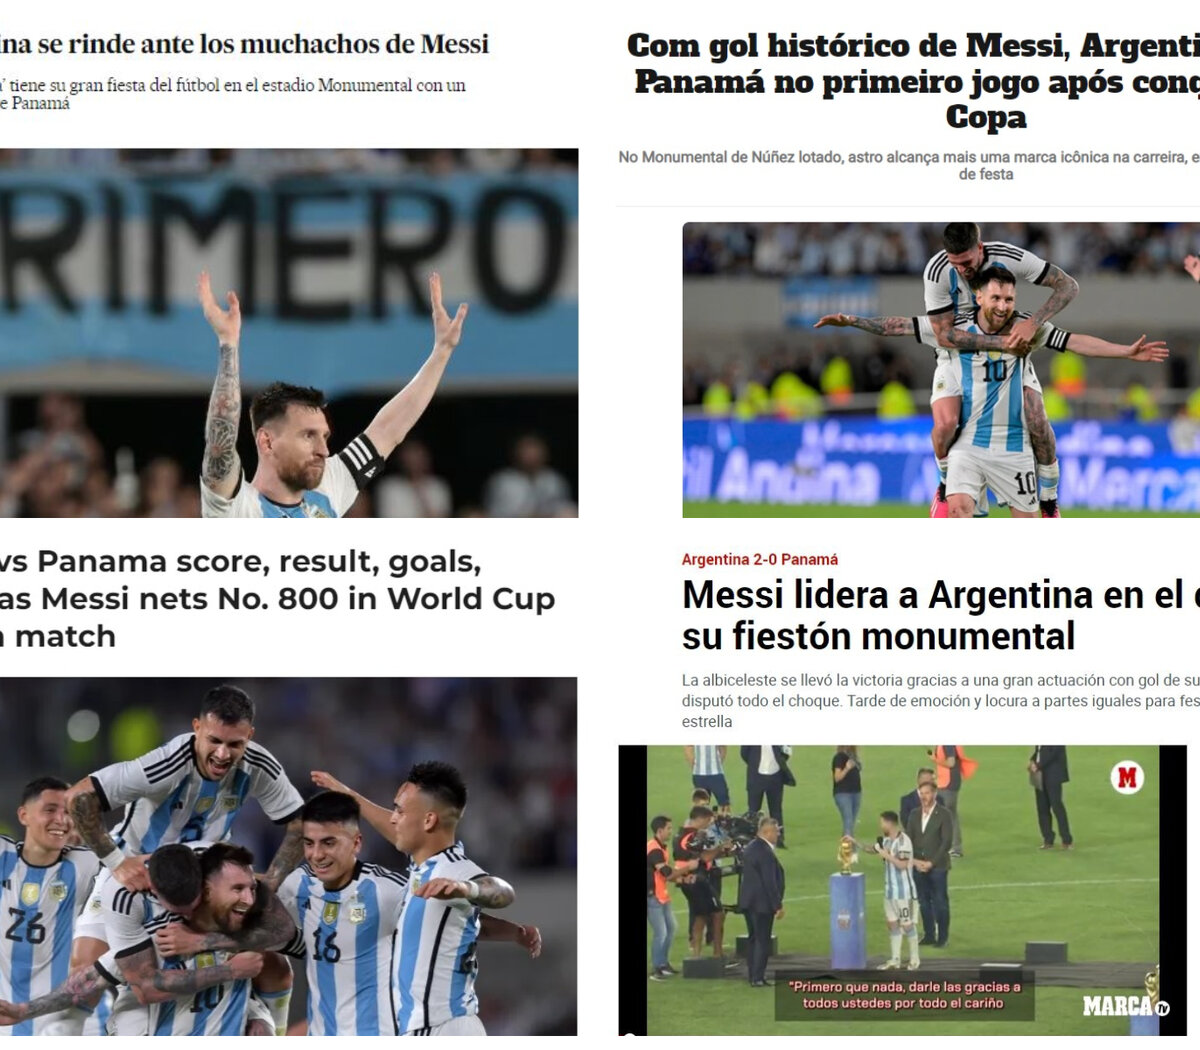 Tender Revocación Monumento Cómo reflejaron los medios internacionales los festejos de la Selección  Argentina | Frente a Panamá en el Monumental | Página12